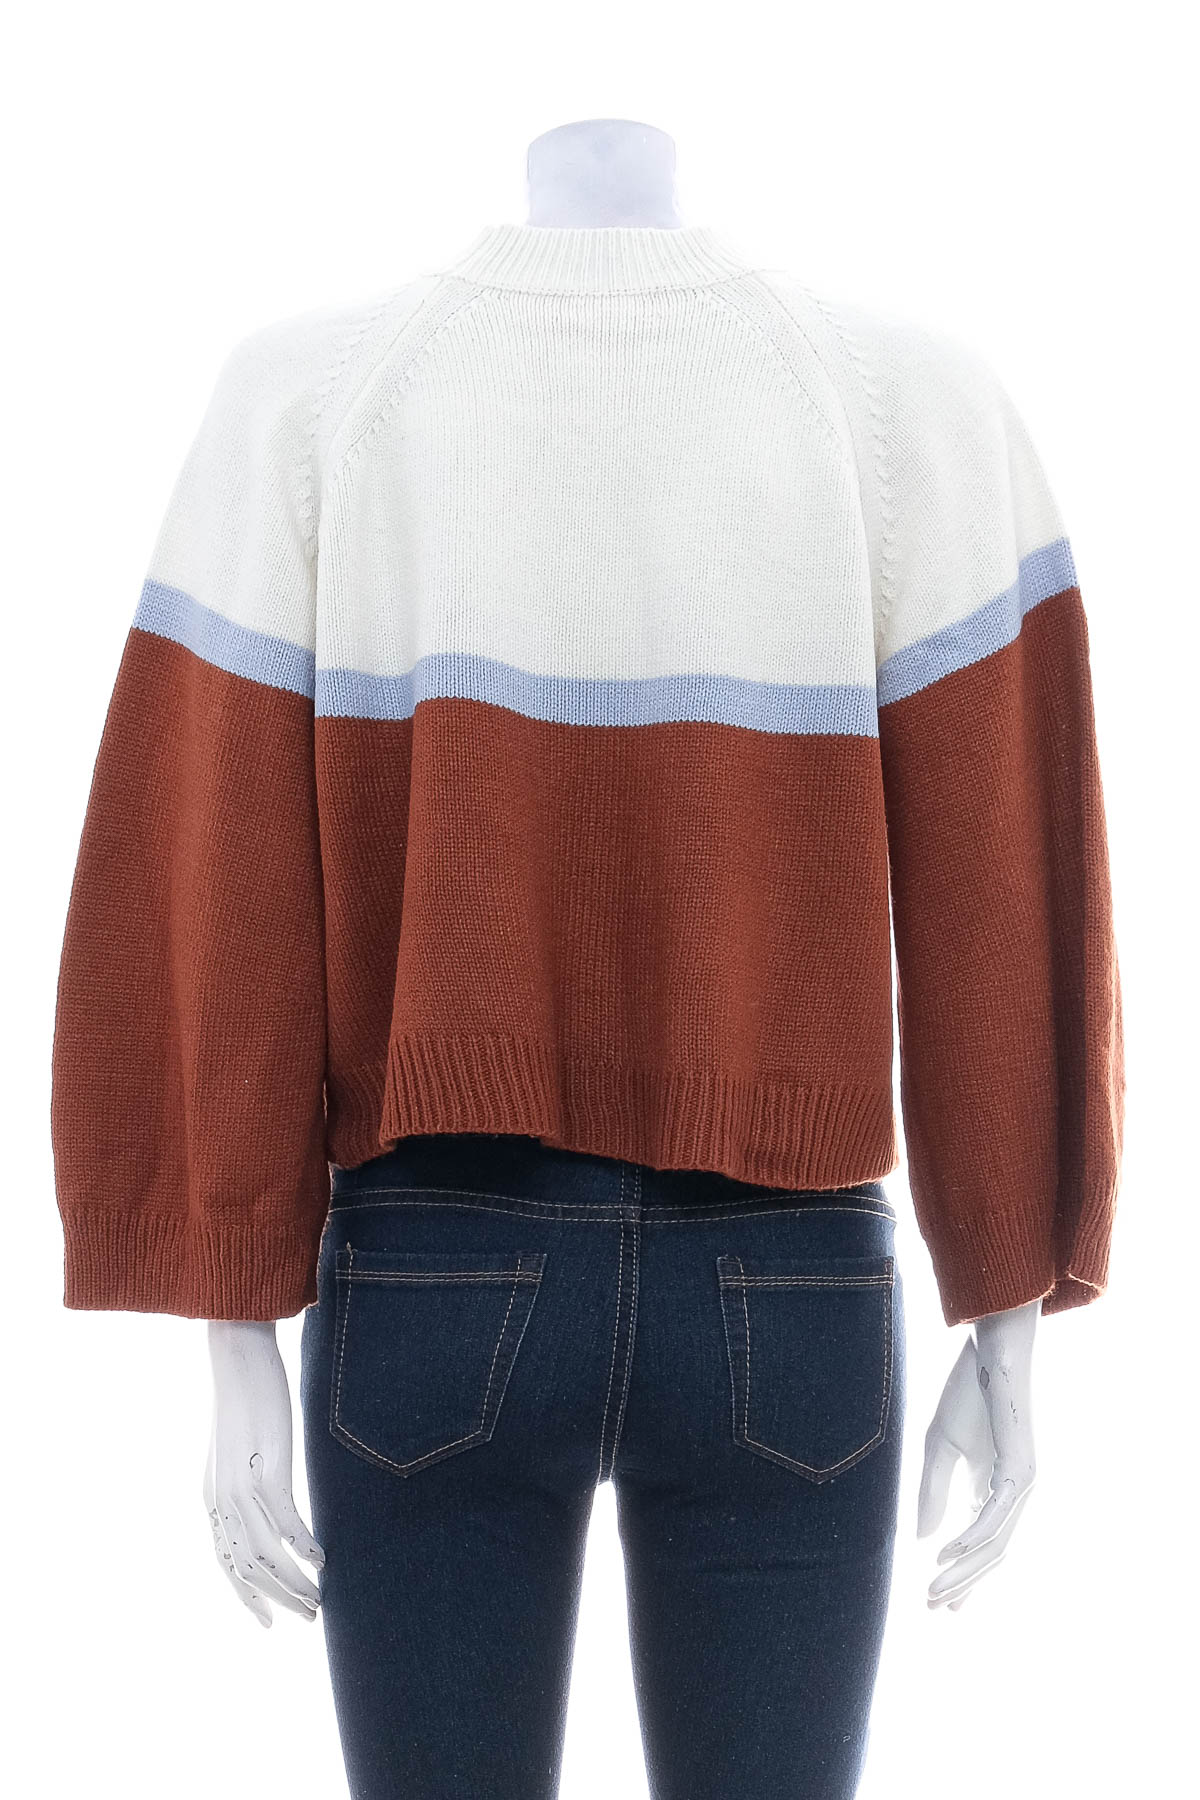 Women's sweater - Langman Huan Xiang - 1